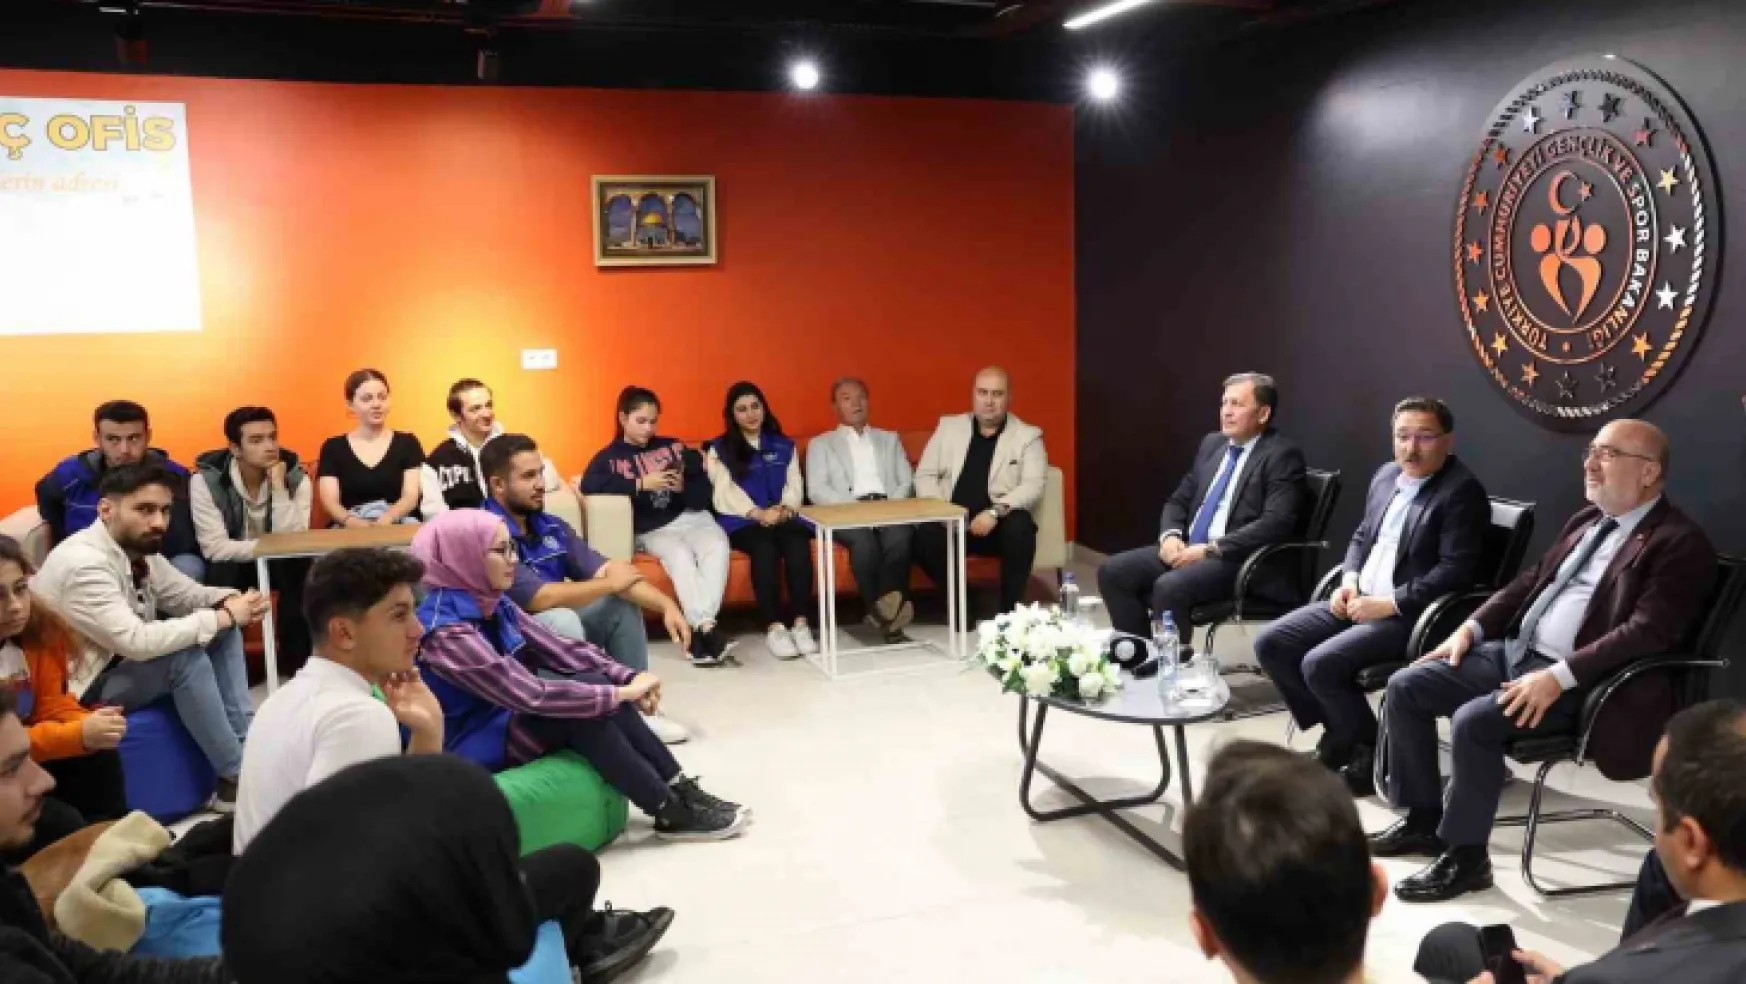 Kayseri Üniversitesi Genç Ofisin açılışı gerçekleştirildi